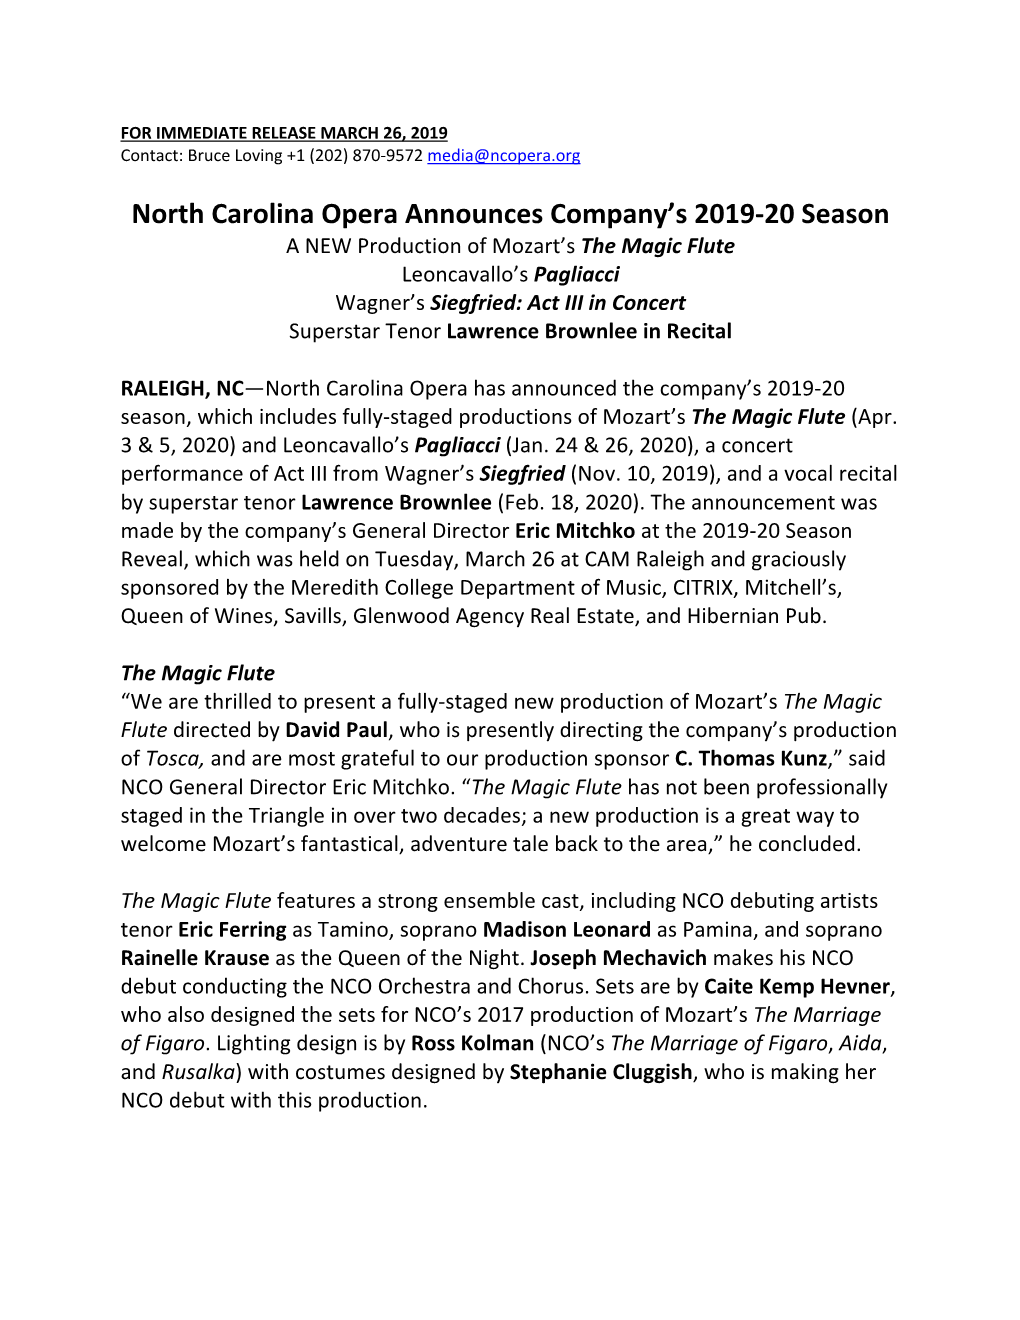 North Carolina Opera 2019-20 Season Announcement